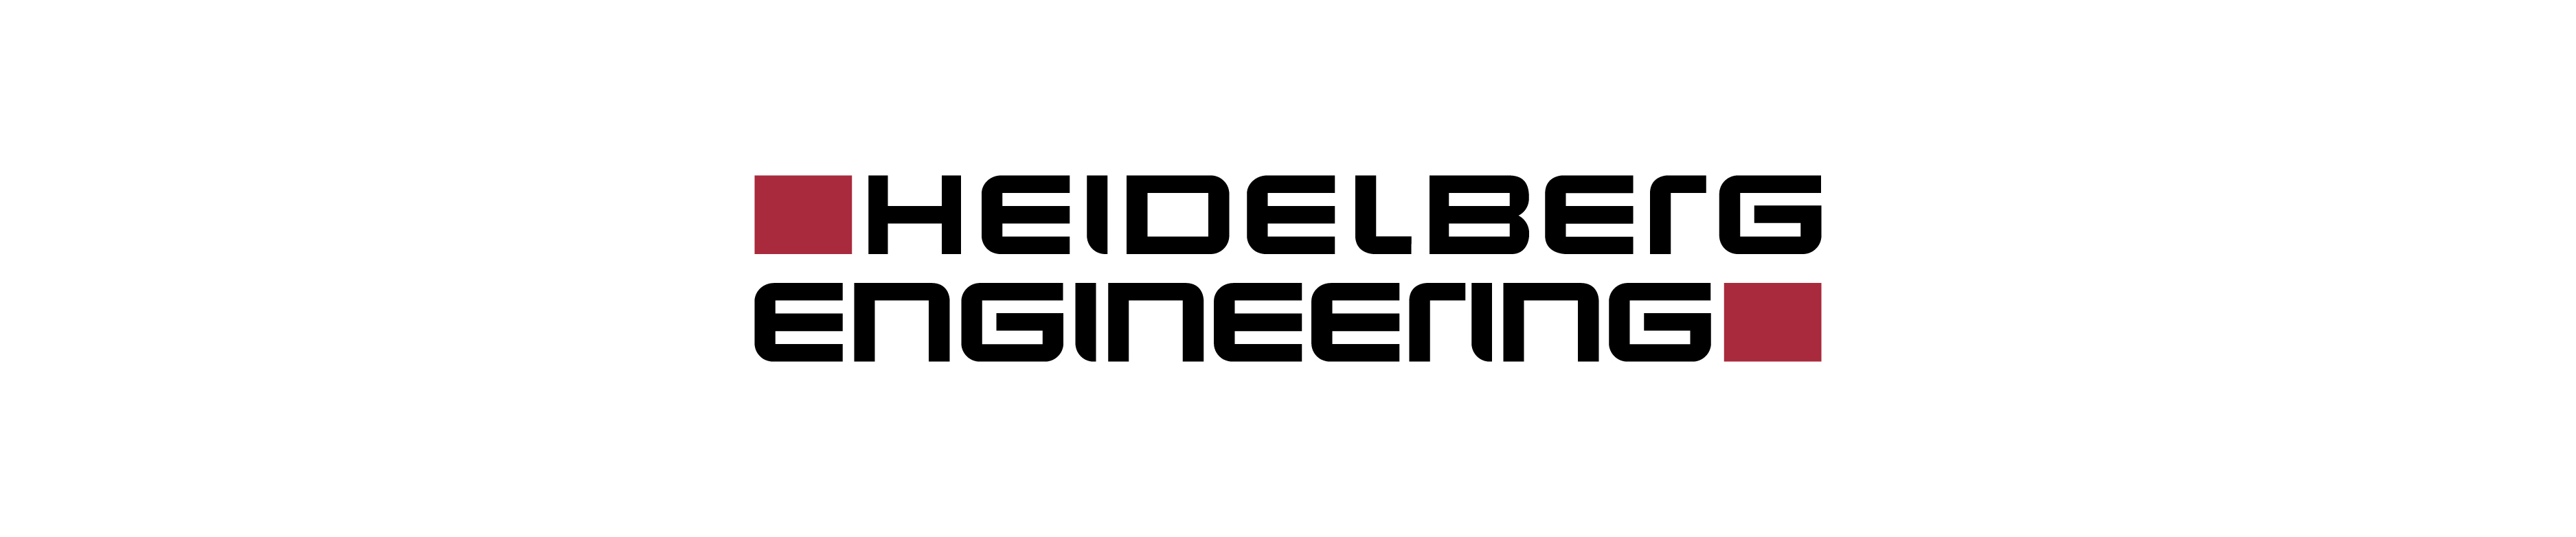 Heidelberg Engineering